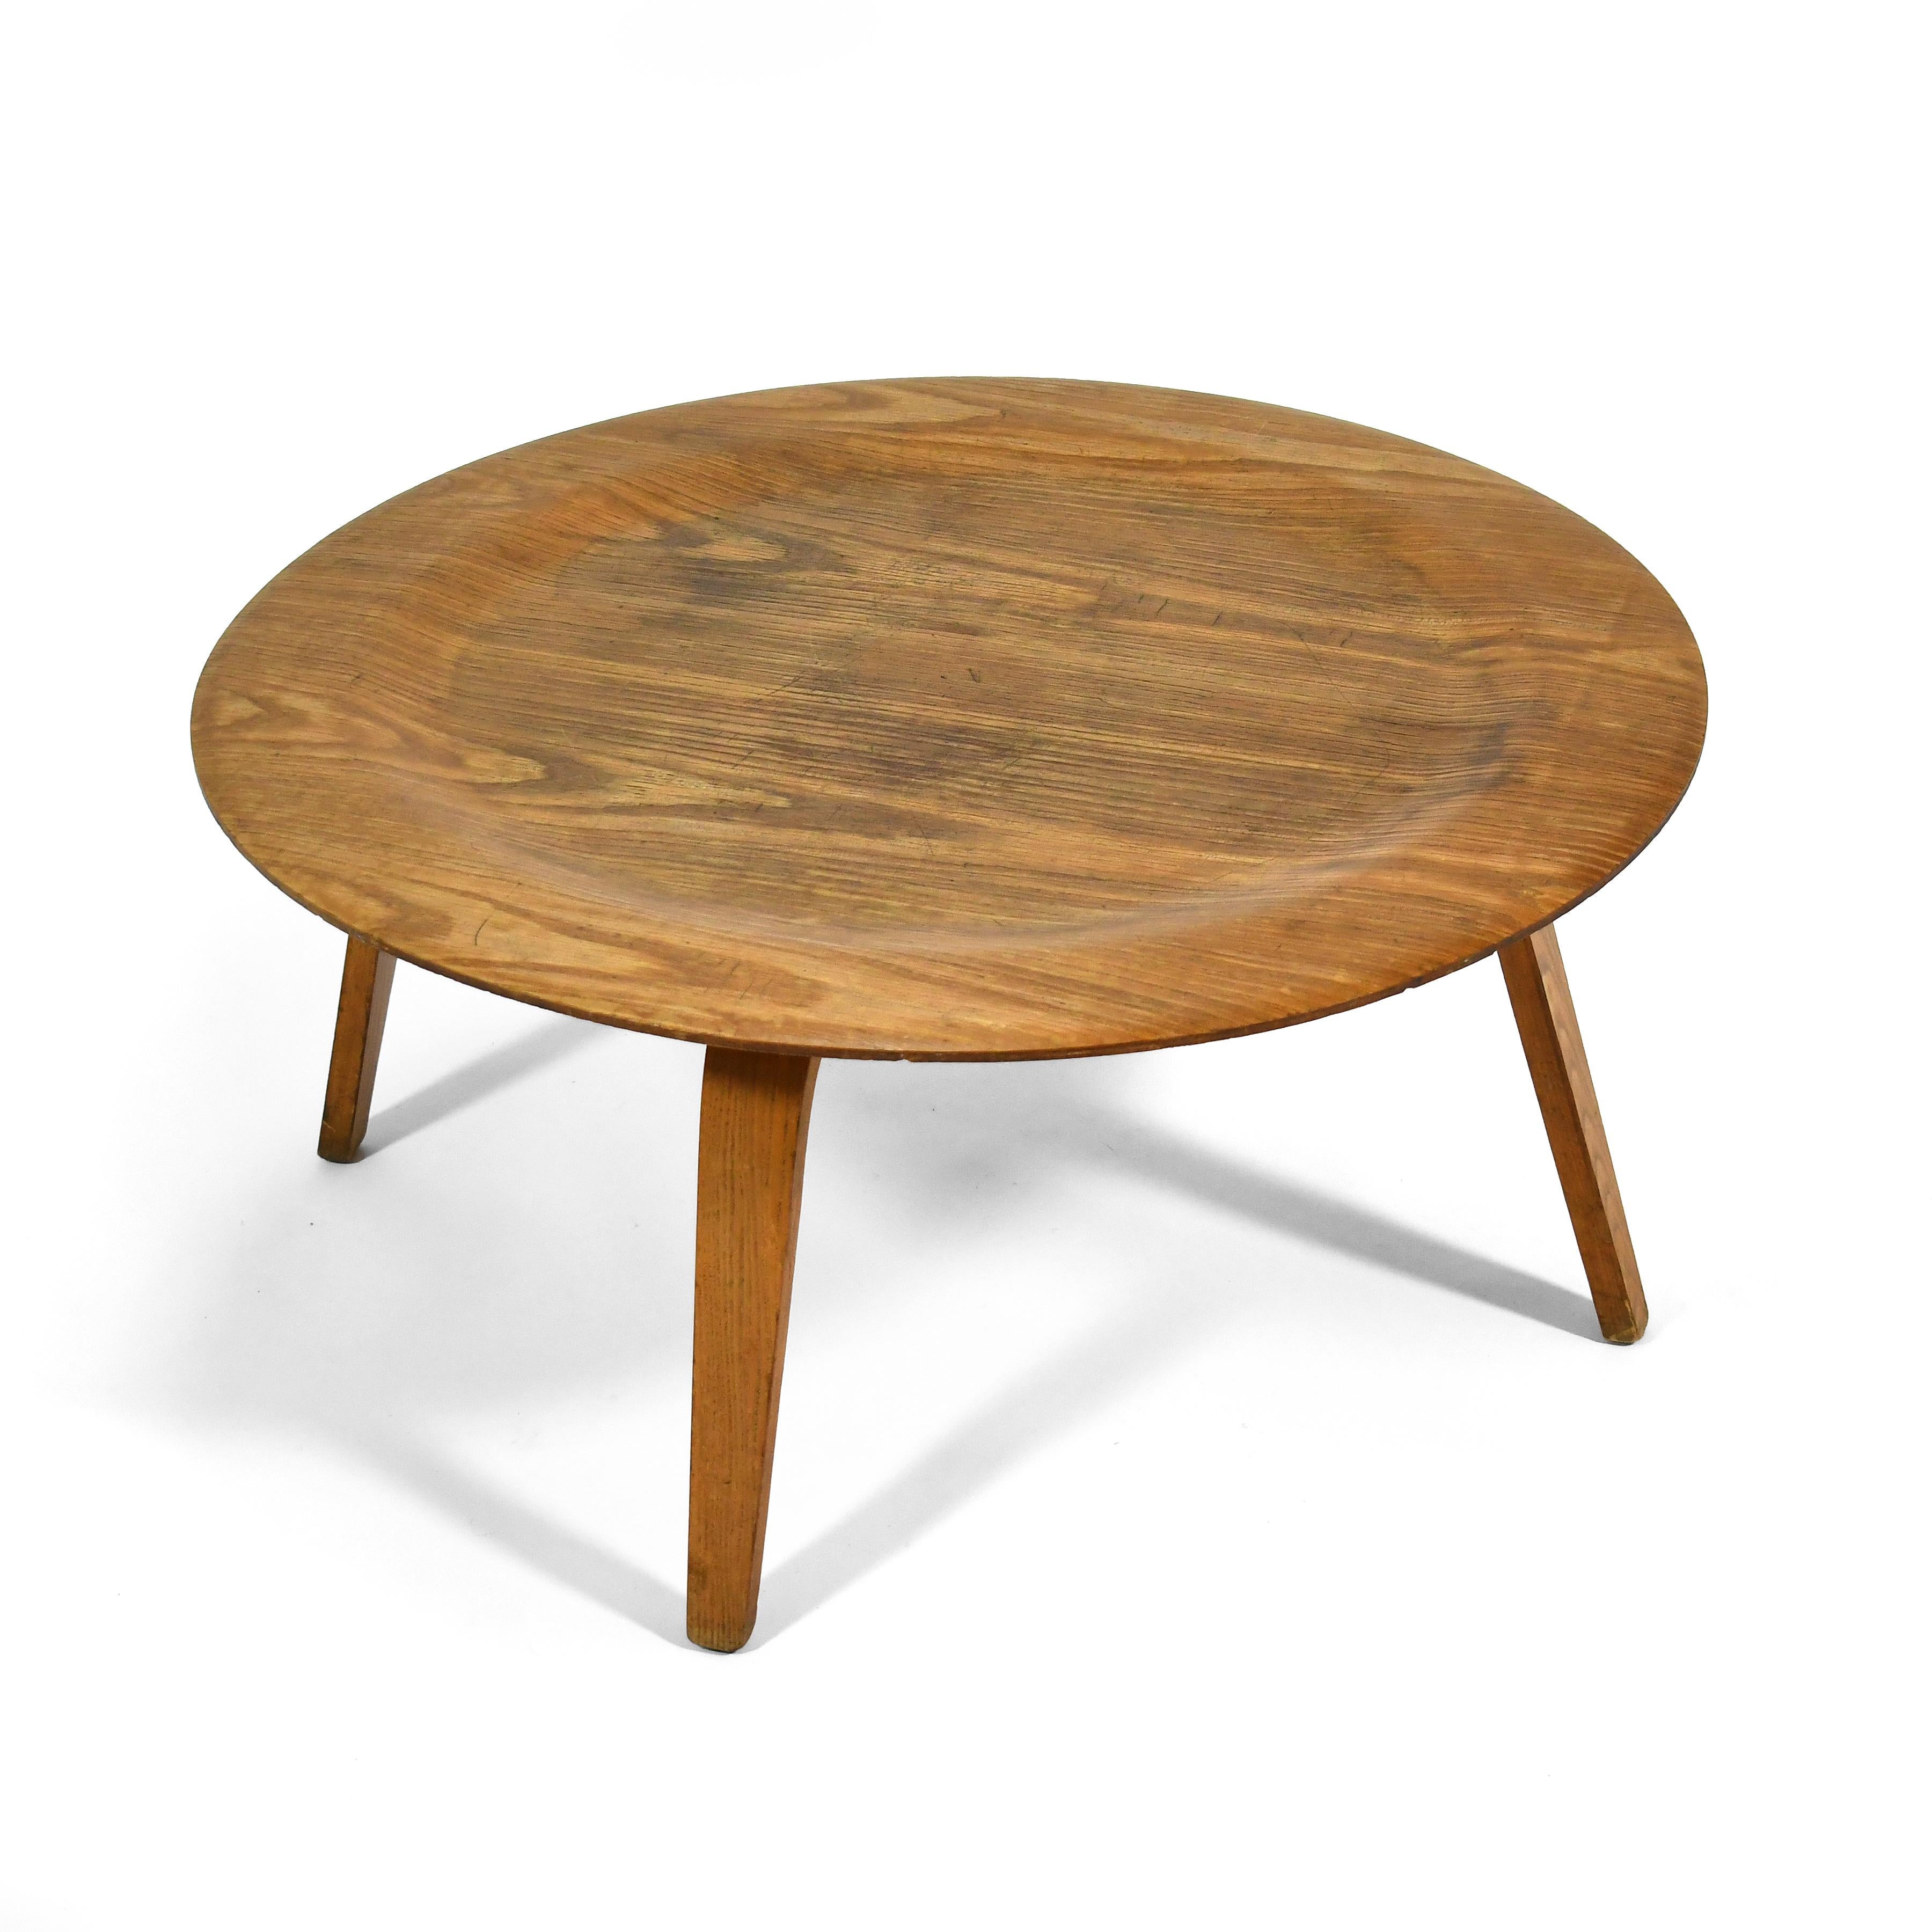 Dieser frühe Vintage-Couchtisch von Charles und Ray Eames ist ein wichtiges und ikonisches Design. Der Tisch ist das Ergebnis der Experimente des Paares mit geformtem Sperrholz. Er ist optisch und physisch leicht und dennoch erstaunlich stabil.